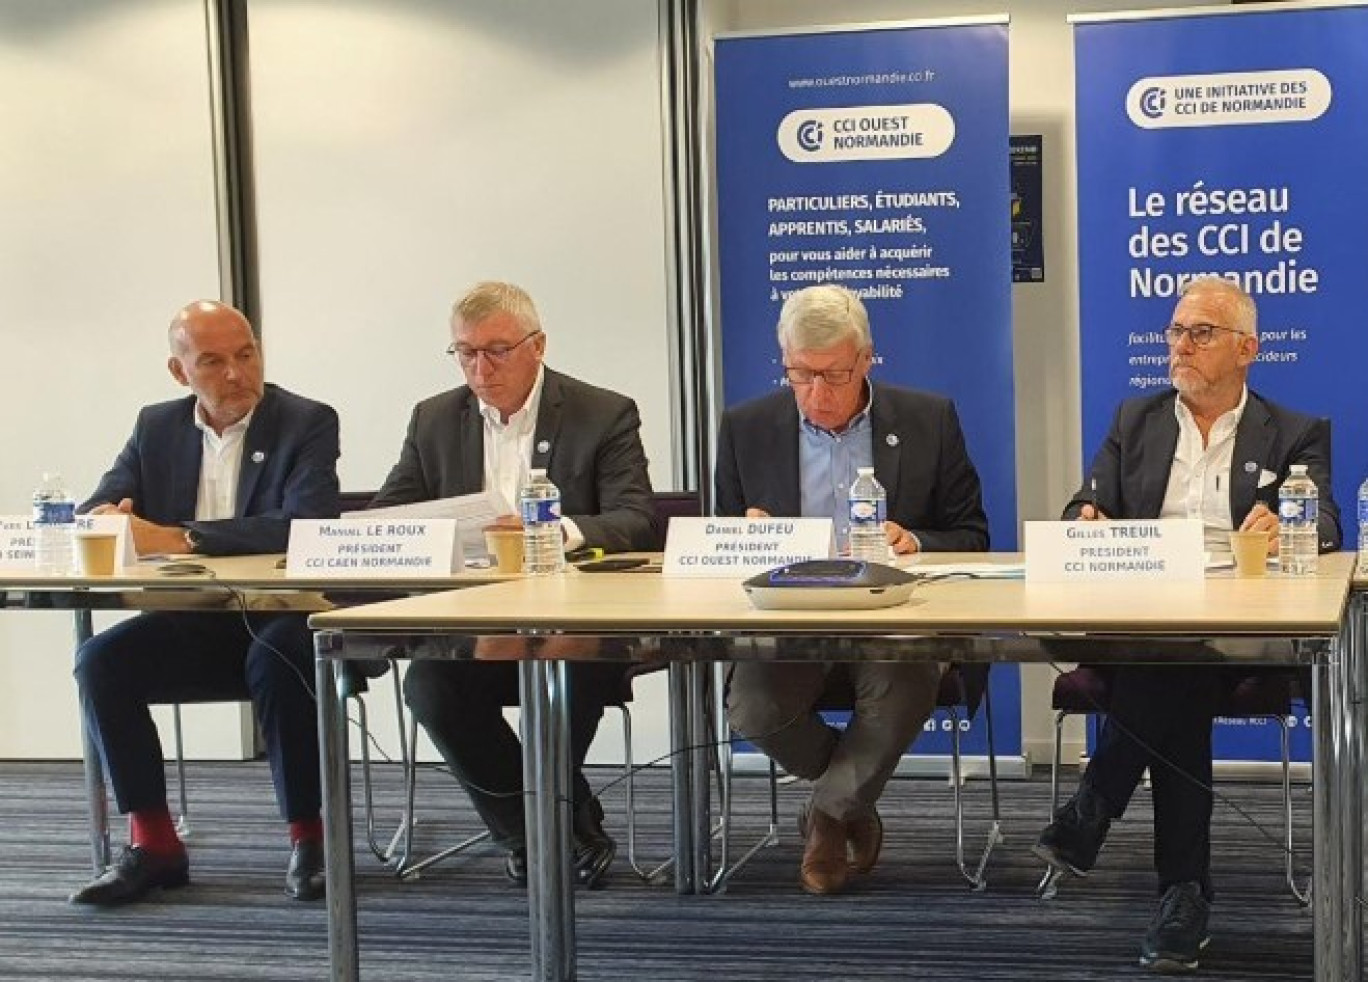 Quatre présidents des CCI de Normandie étaient présents pour la conférence de presse de rentrée.